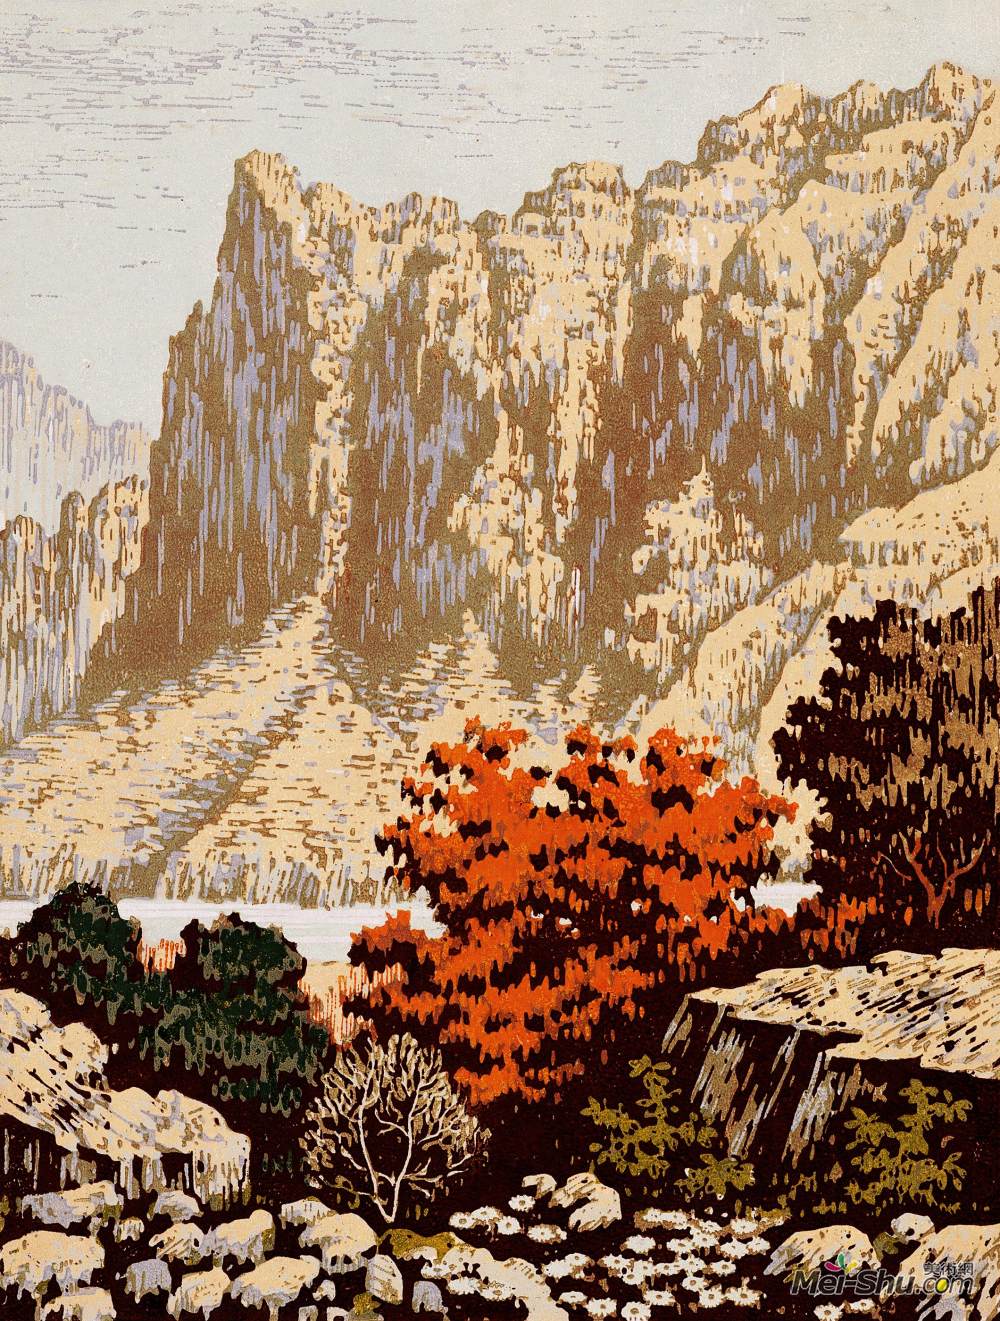 太行山天然石版画图片